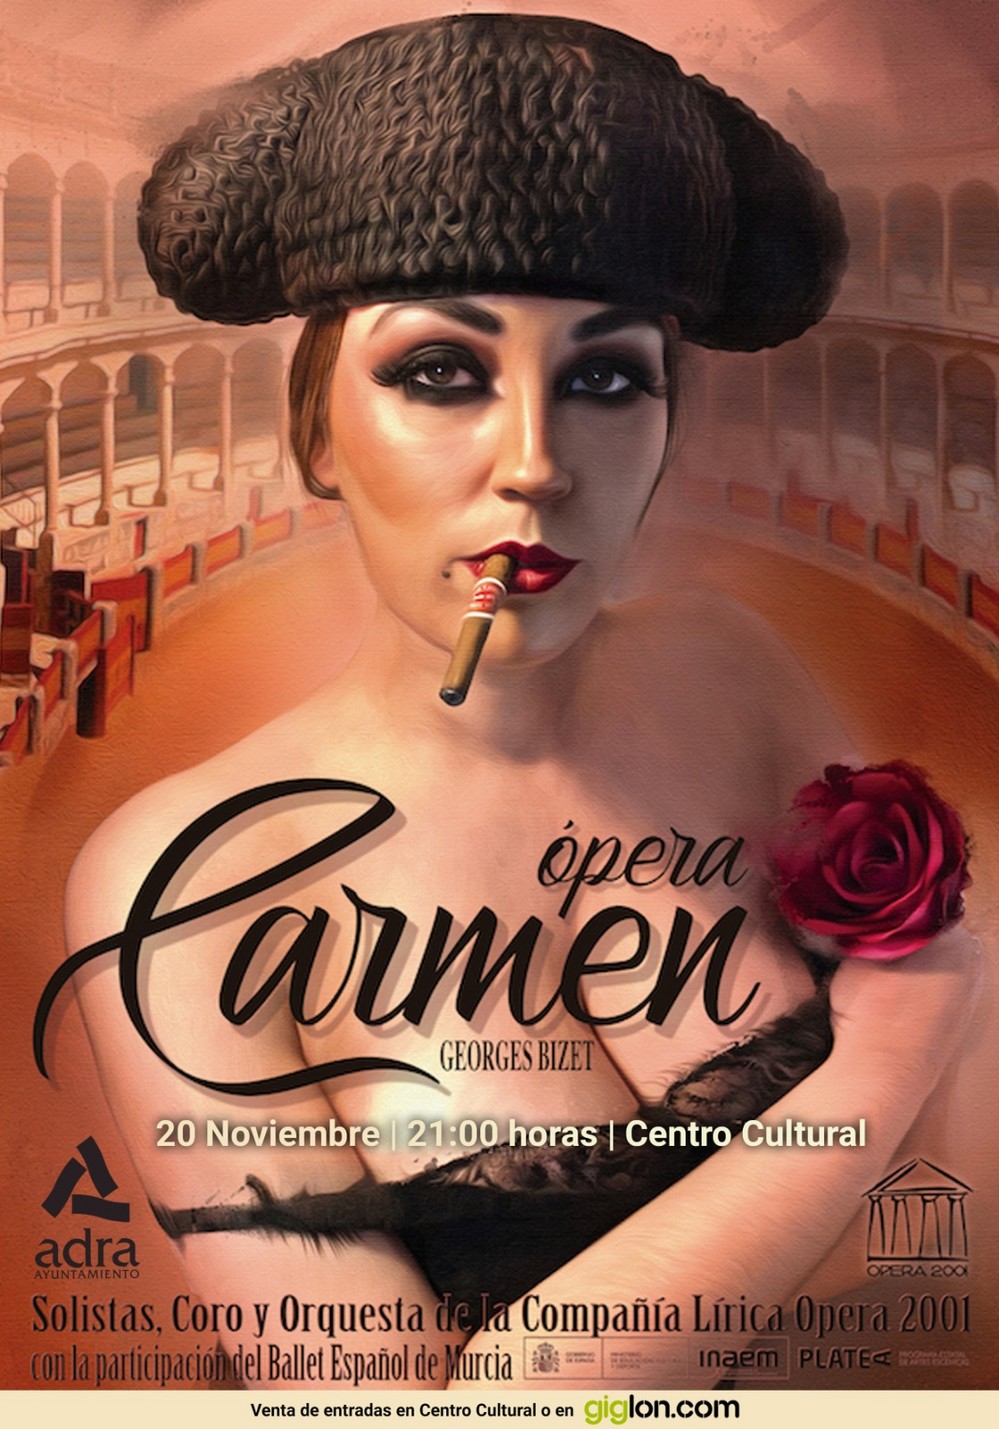 ‘Ópera Carmen’, una de las citas más esperadas del otoño abderitano, llega a la ciudad milenaria el 20 de noviembre